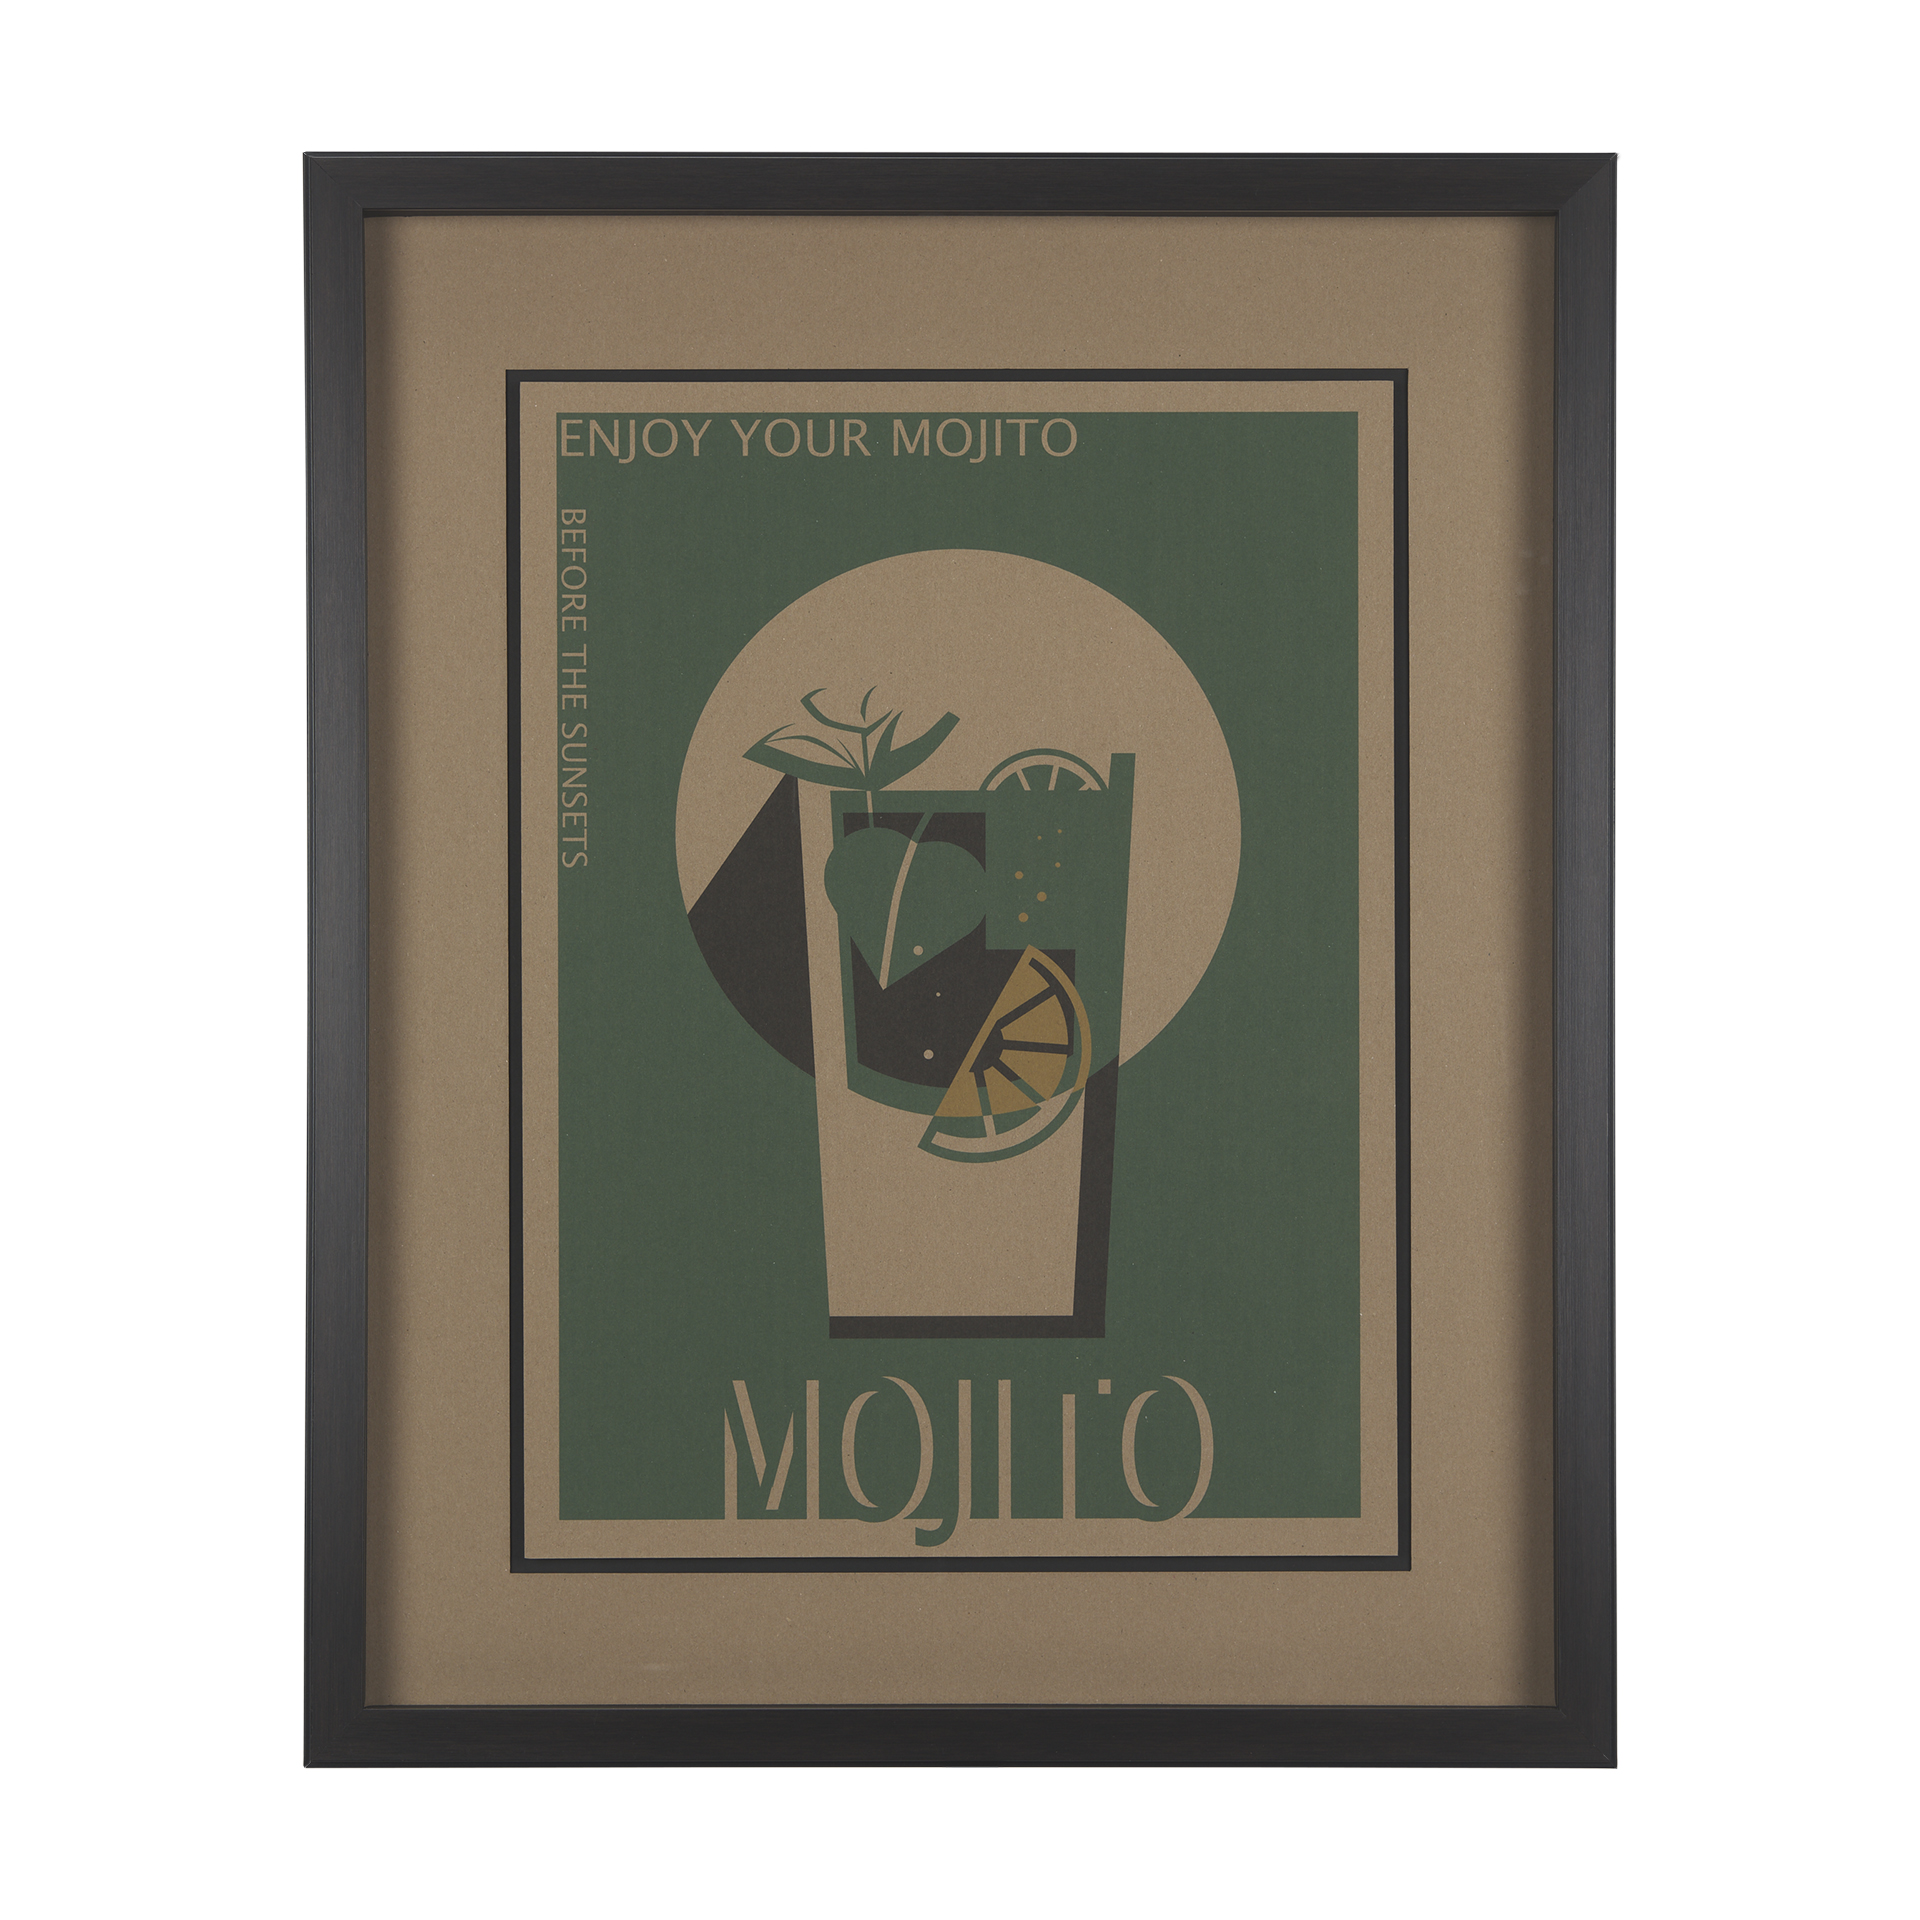 Mojito (25 x 31)